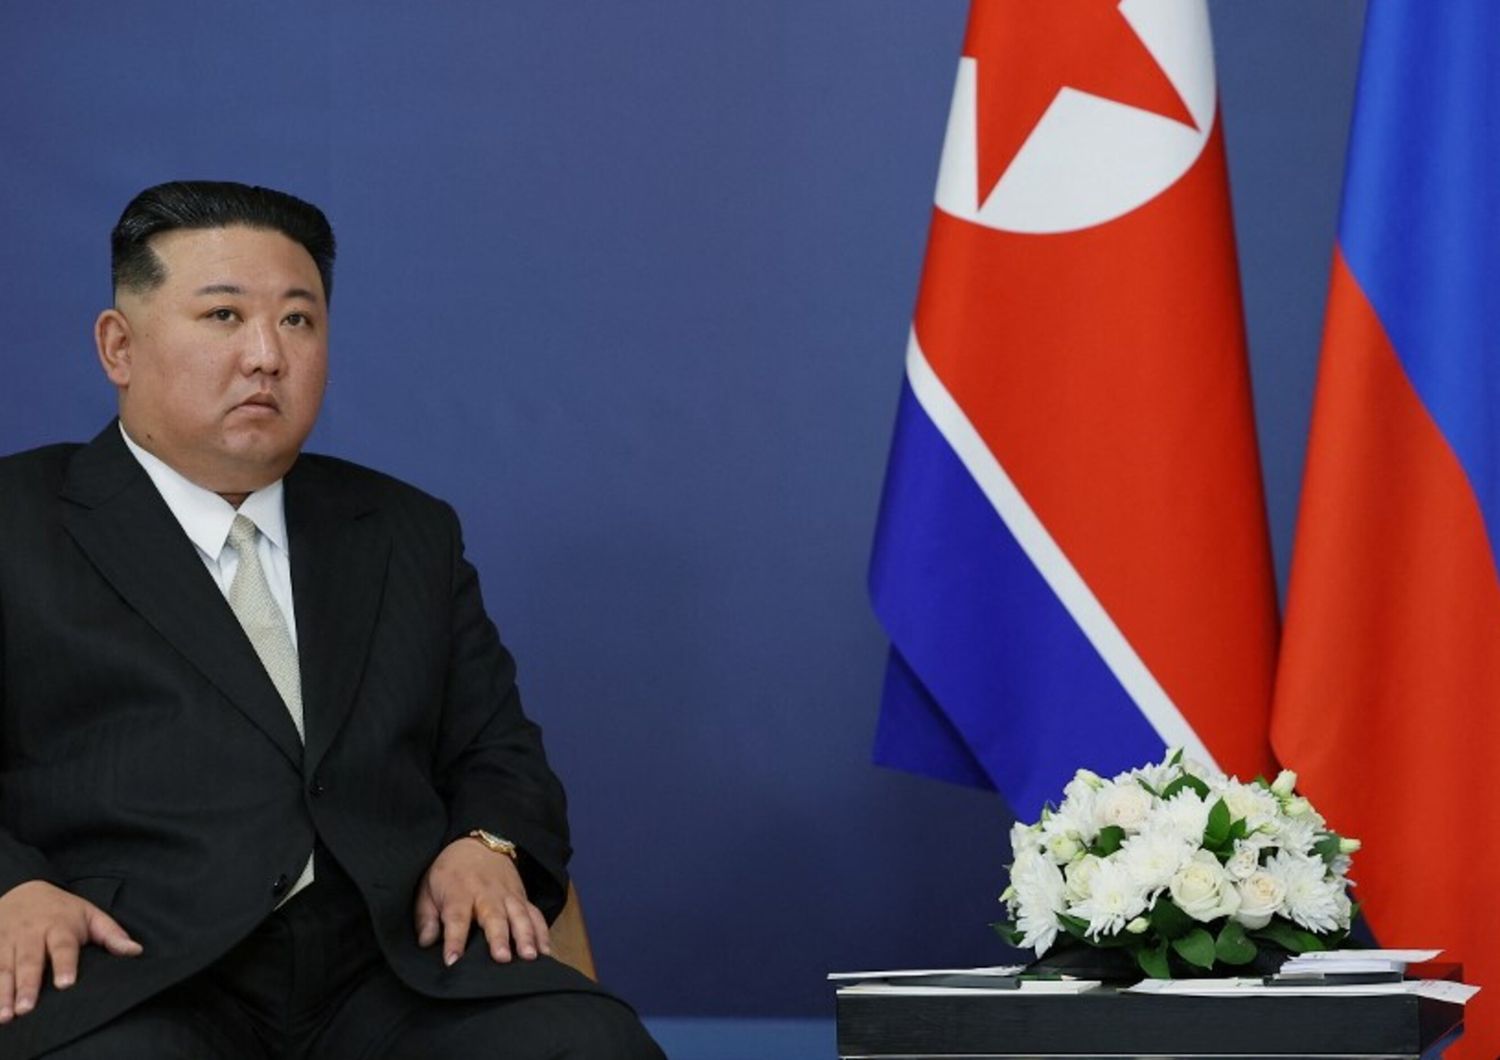 Il leader nordcoreano ha intensificato le sue azioni provocatorie